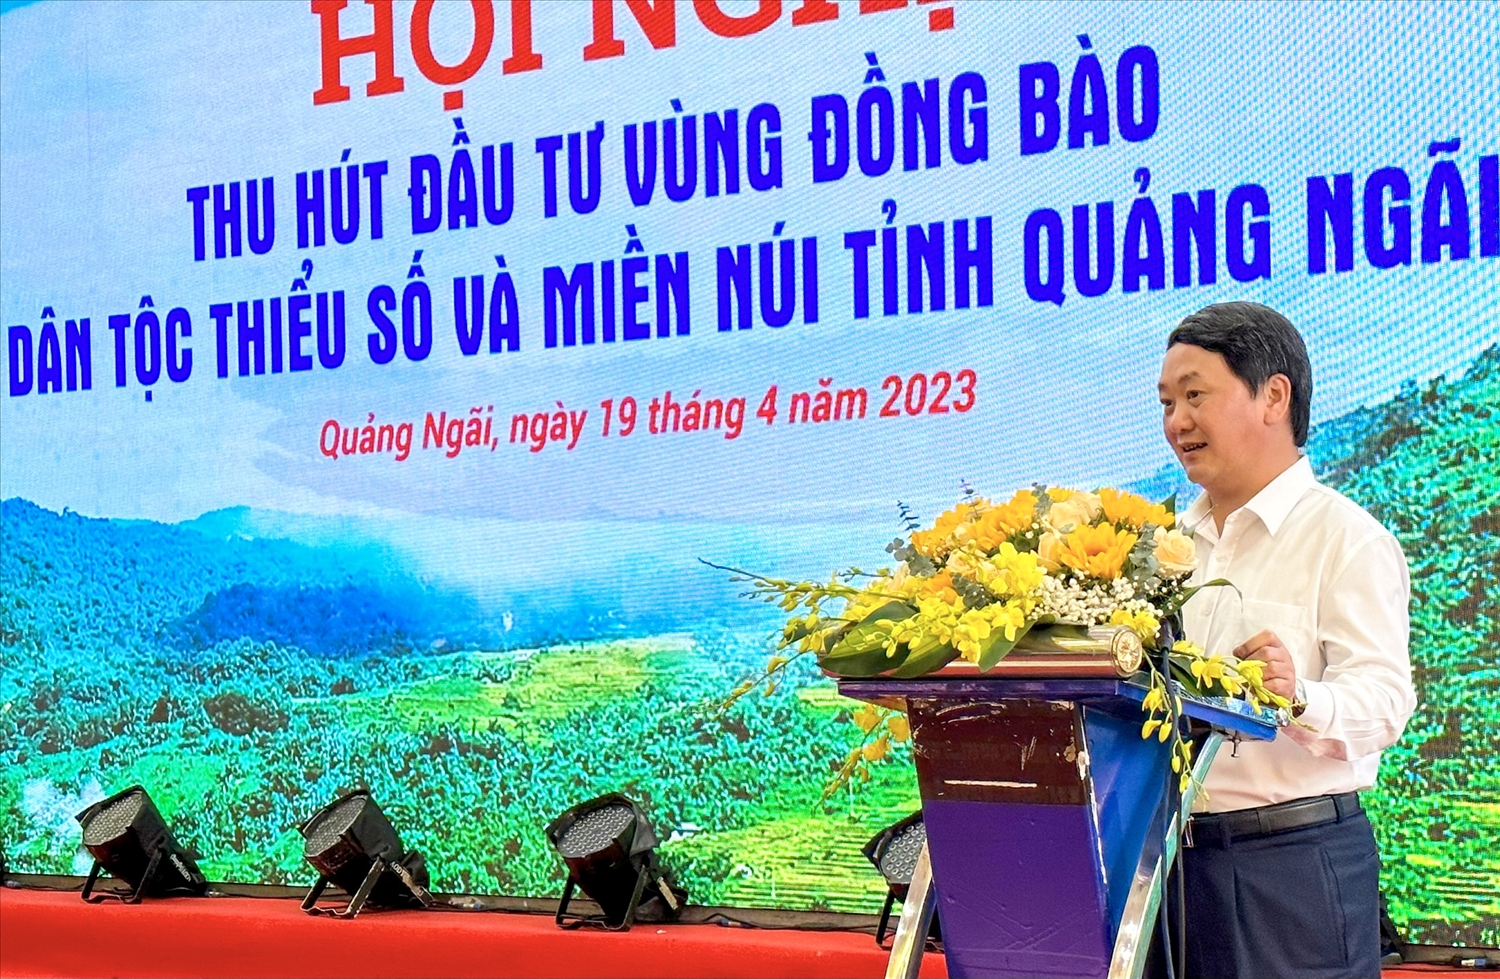 Bộ trưởng, Chủ nhiệm Ủy ban Dân tộc Hầu A Lềnh đánh giá cao sáng kiến của tỉnh Quảng Ngãi trong việc thu hút đầu tư vào vùng đồng bào DTTS và miền núi